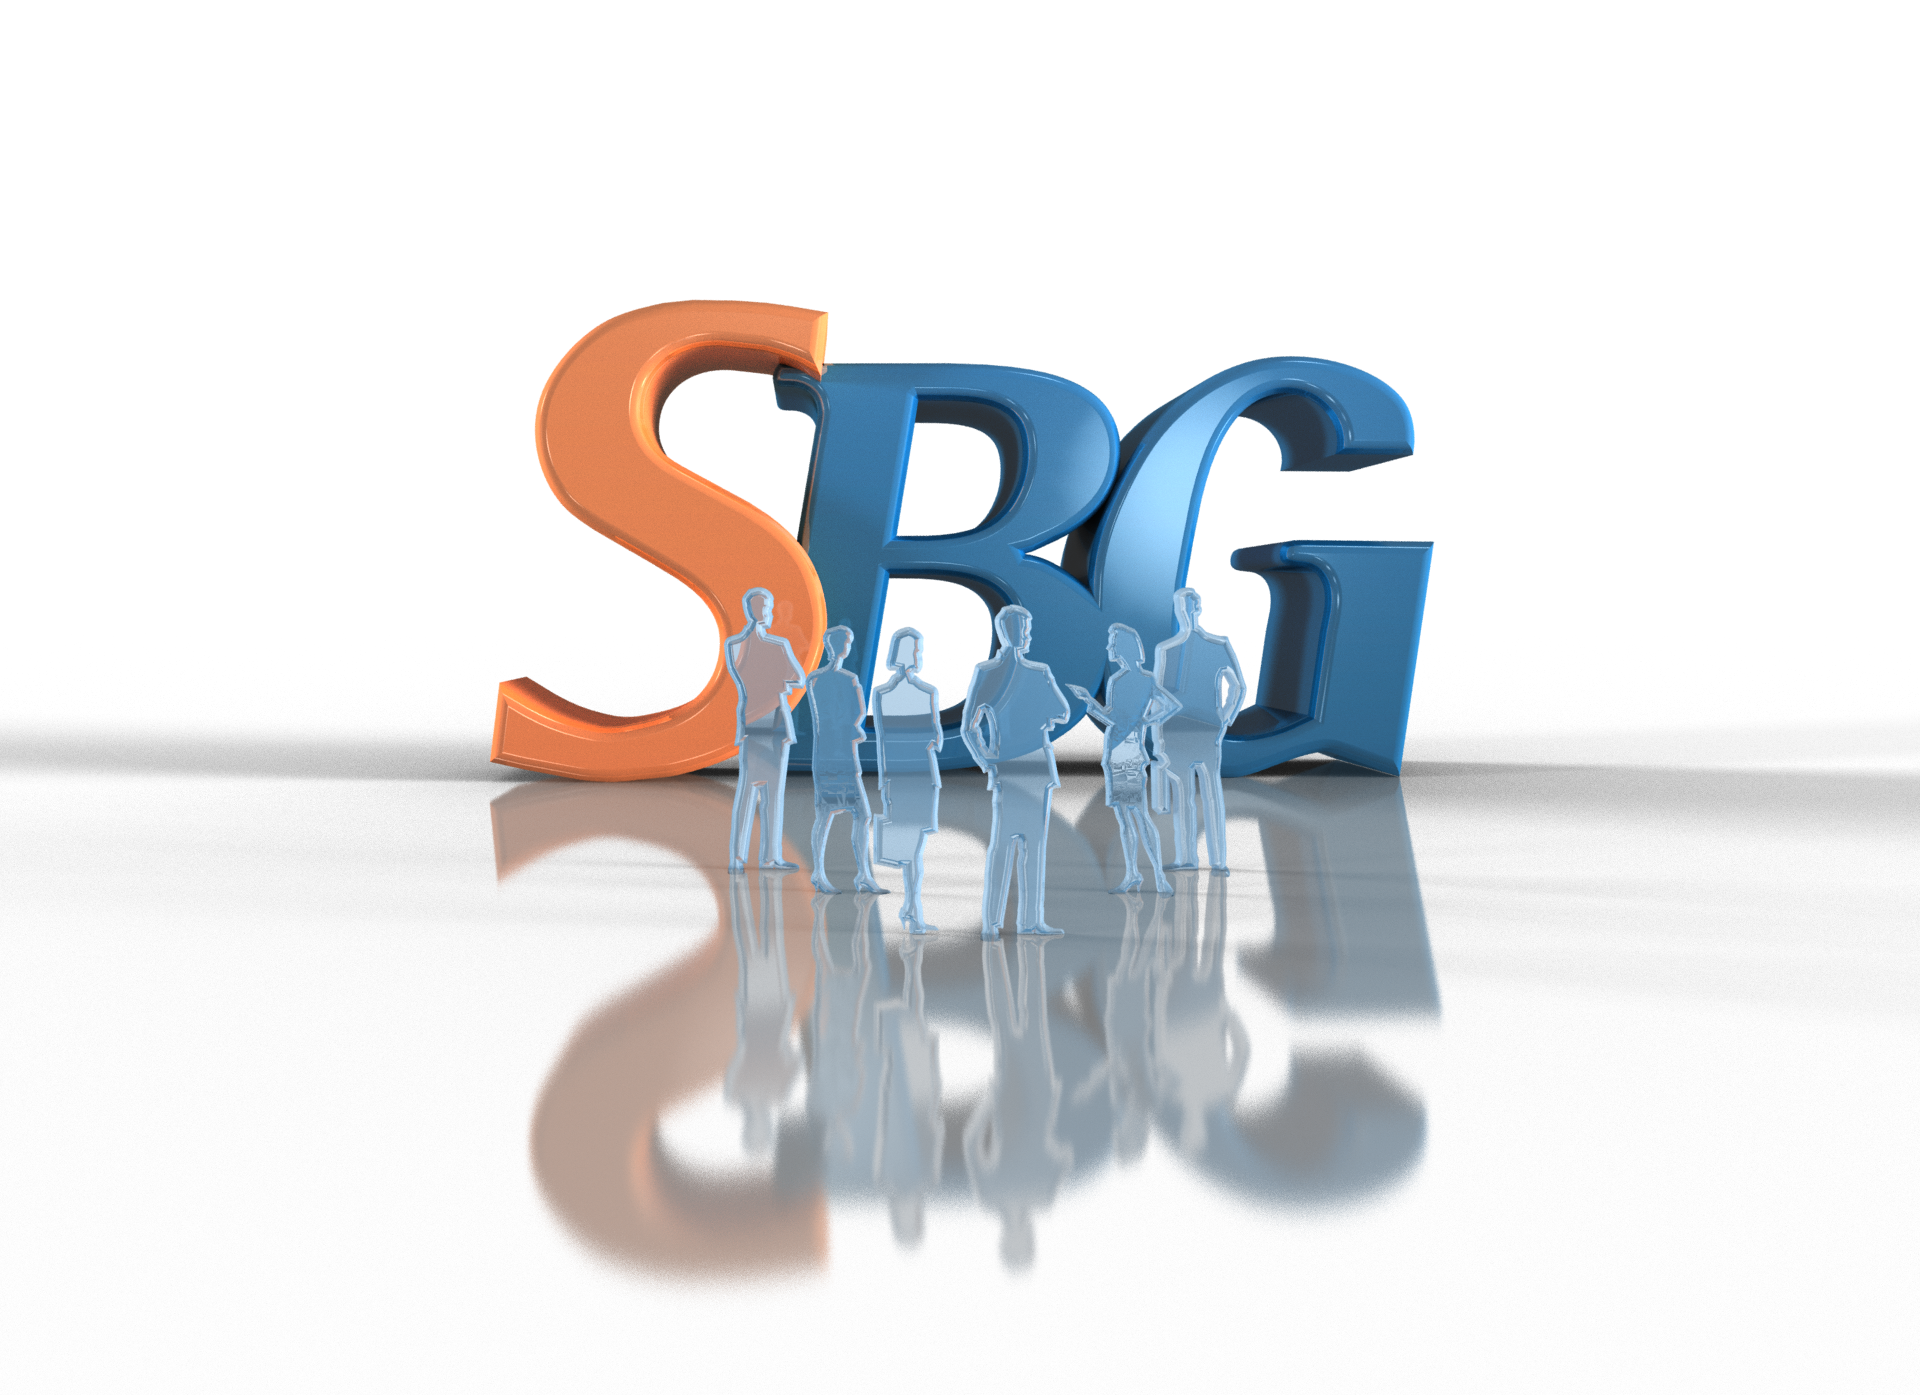 SBG | Smugware Studios